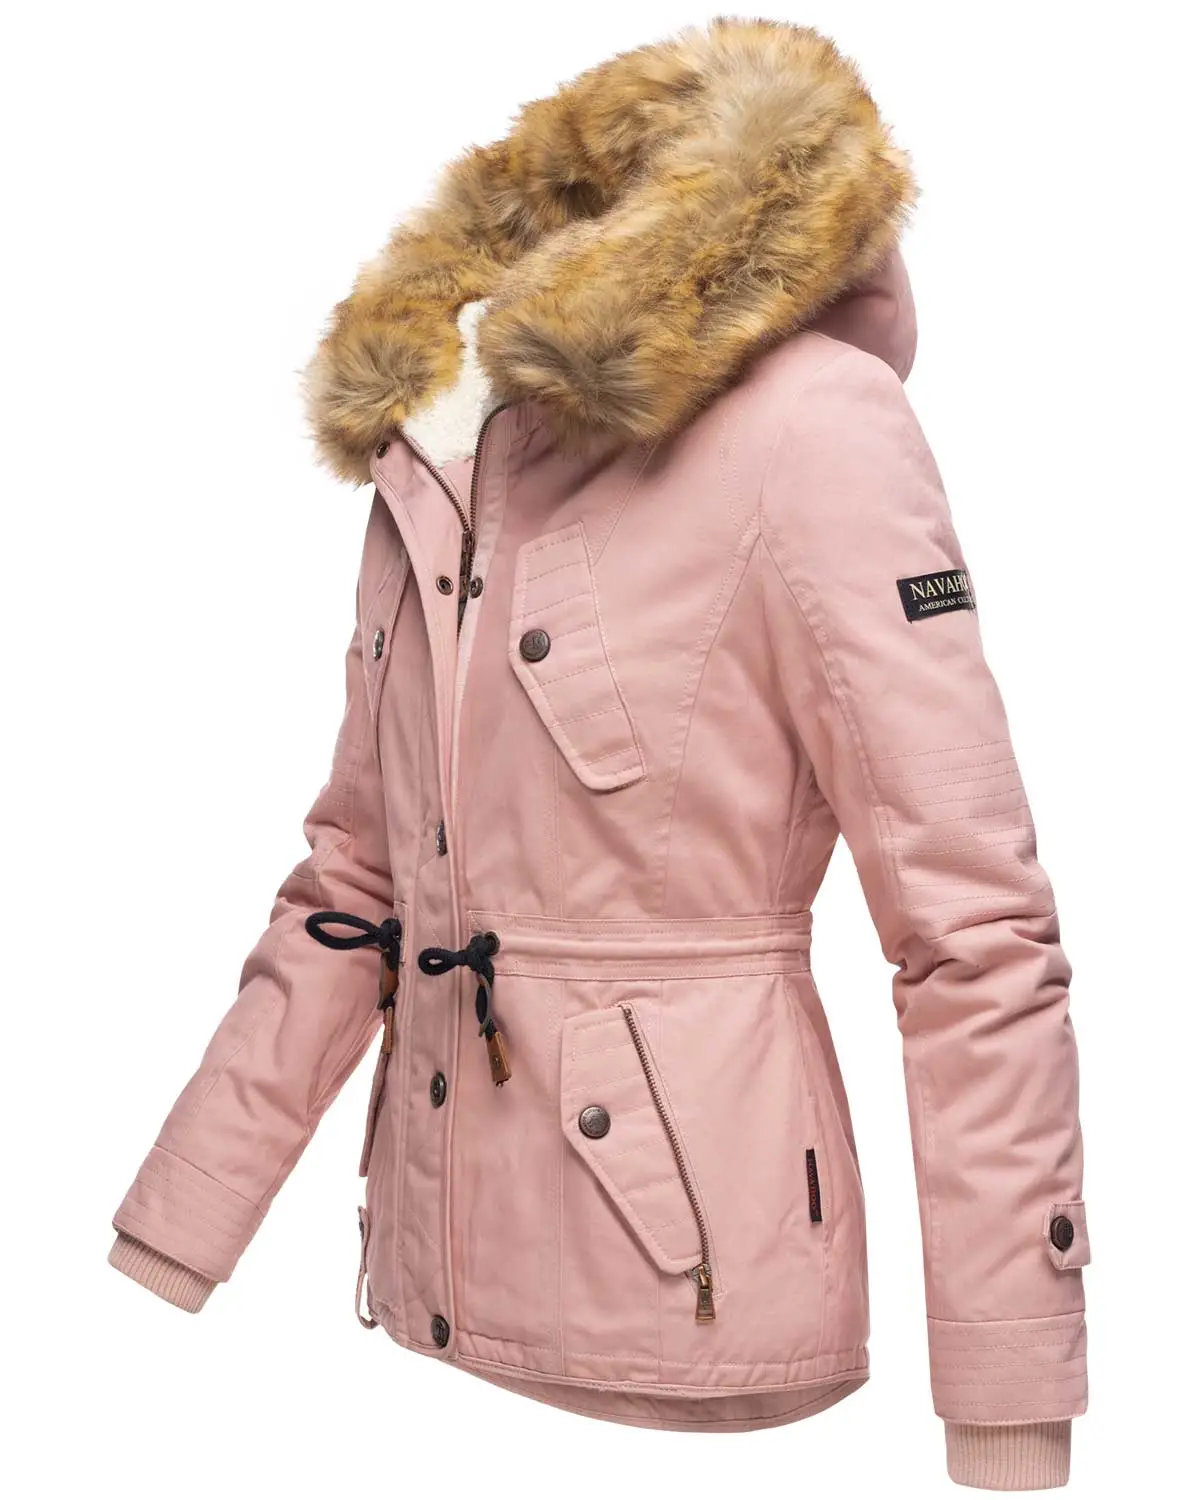 Ladies winter hooded faux fur coat